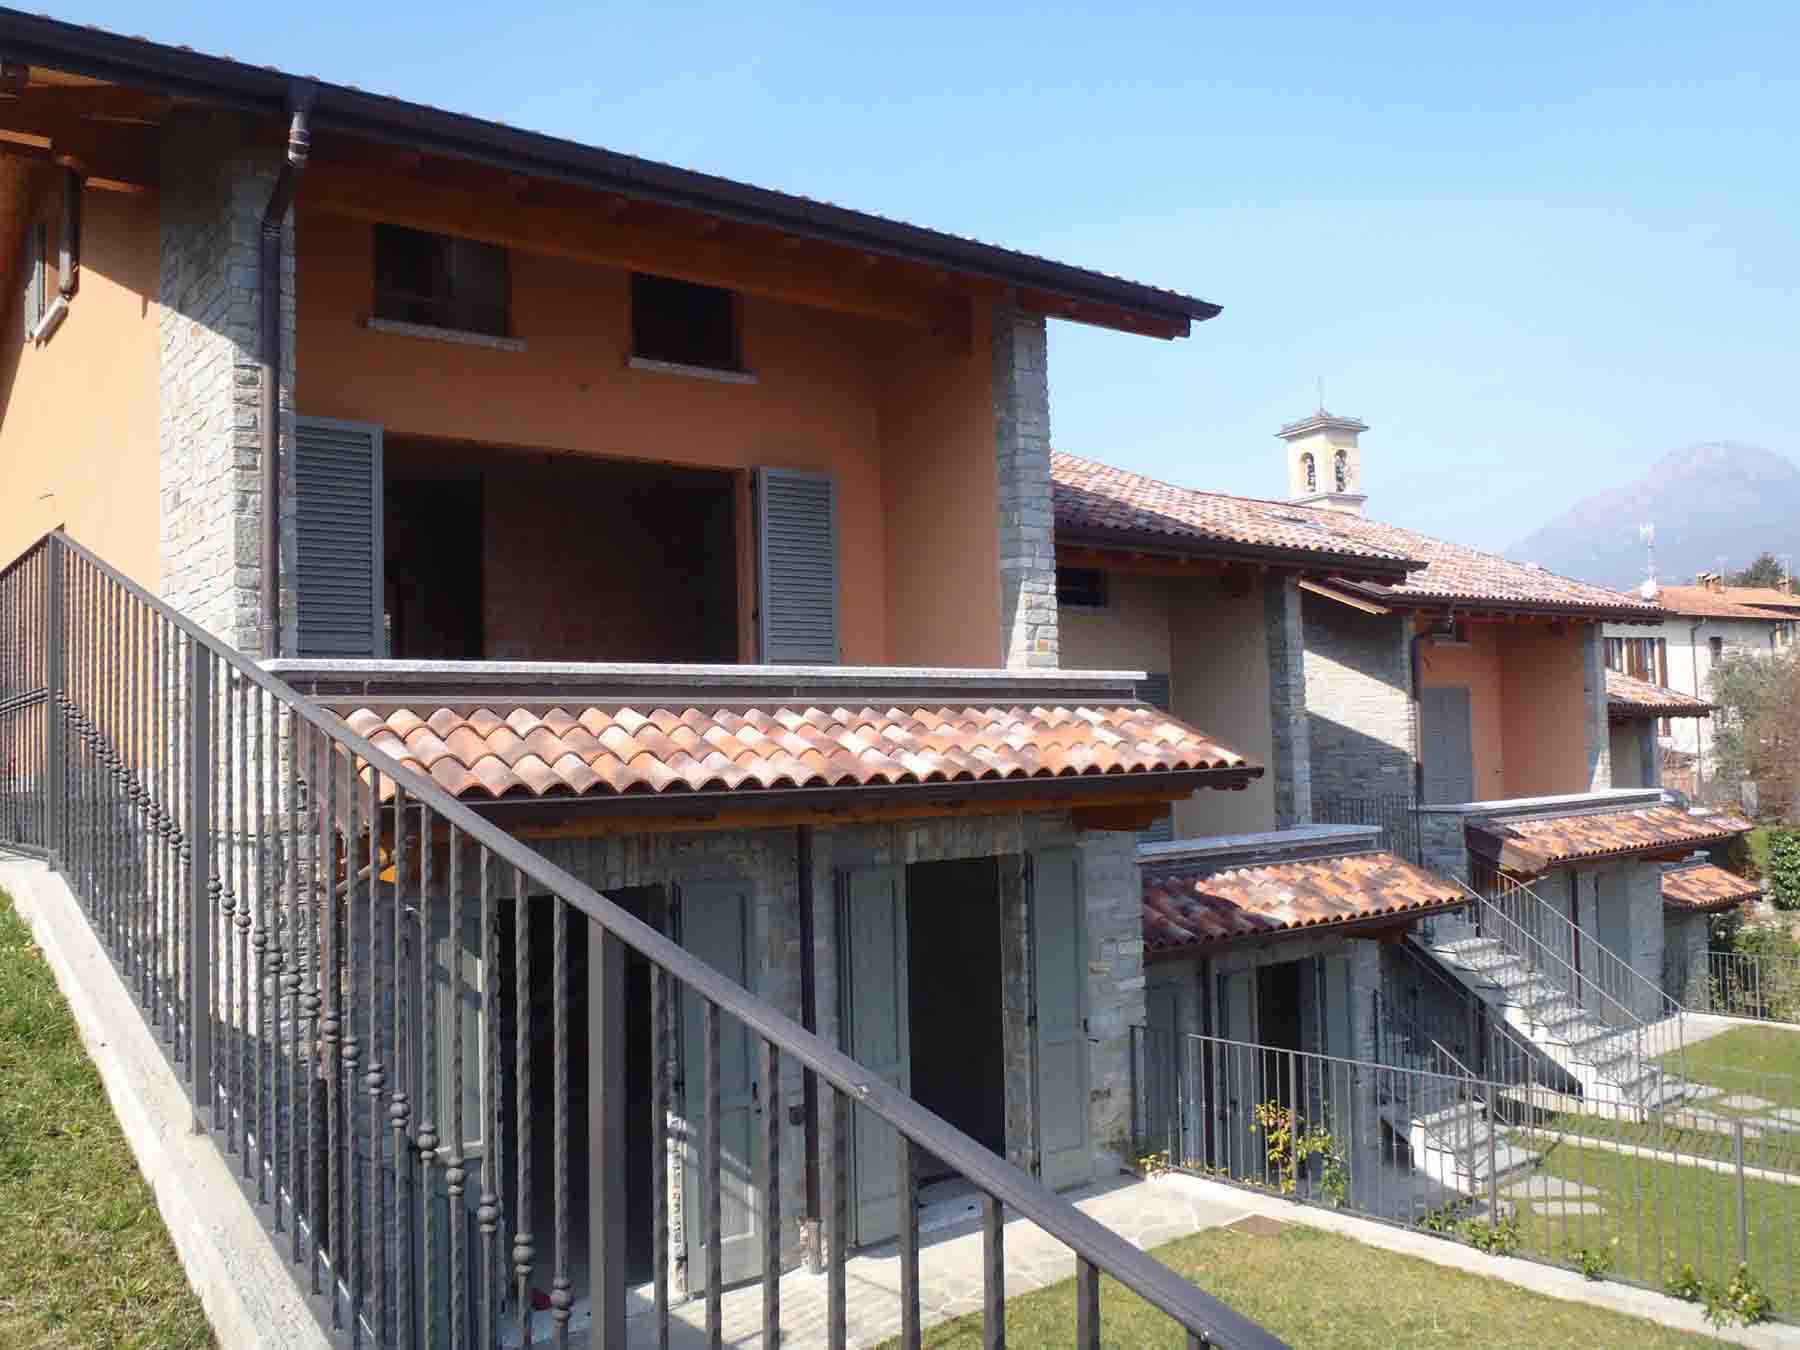 Semi-detached new house in Menaggio